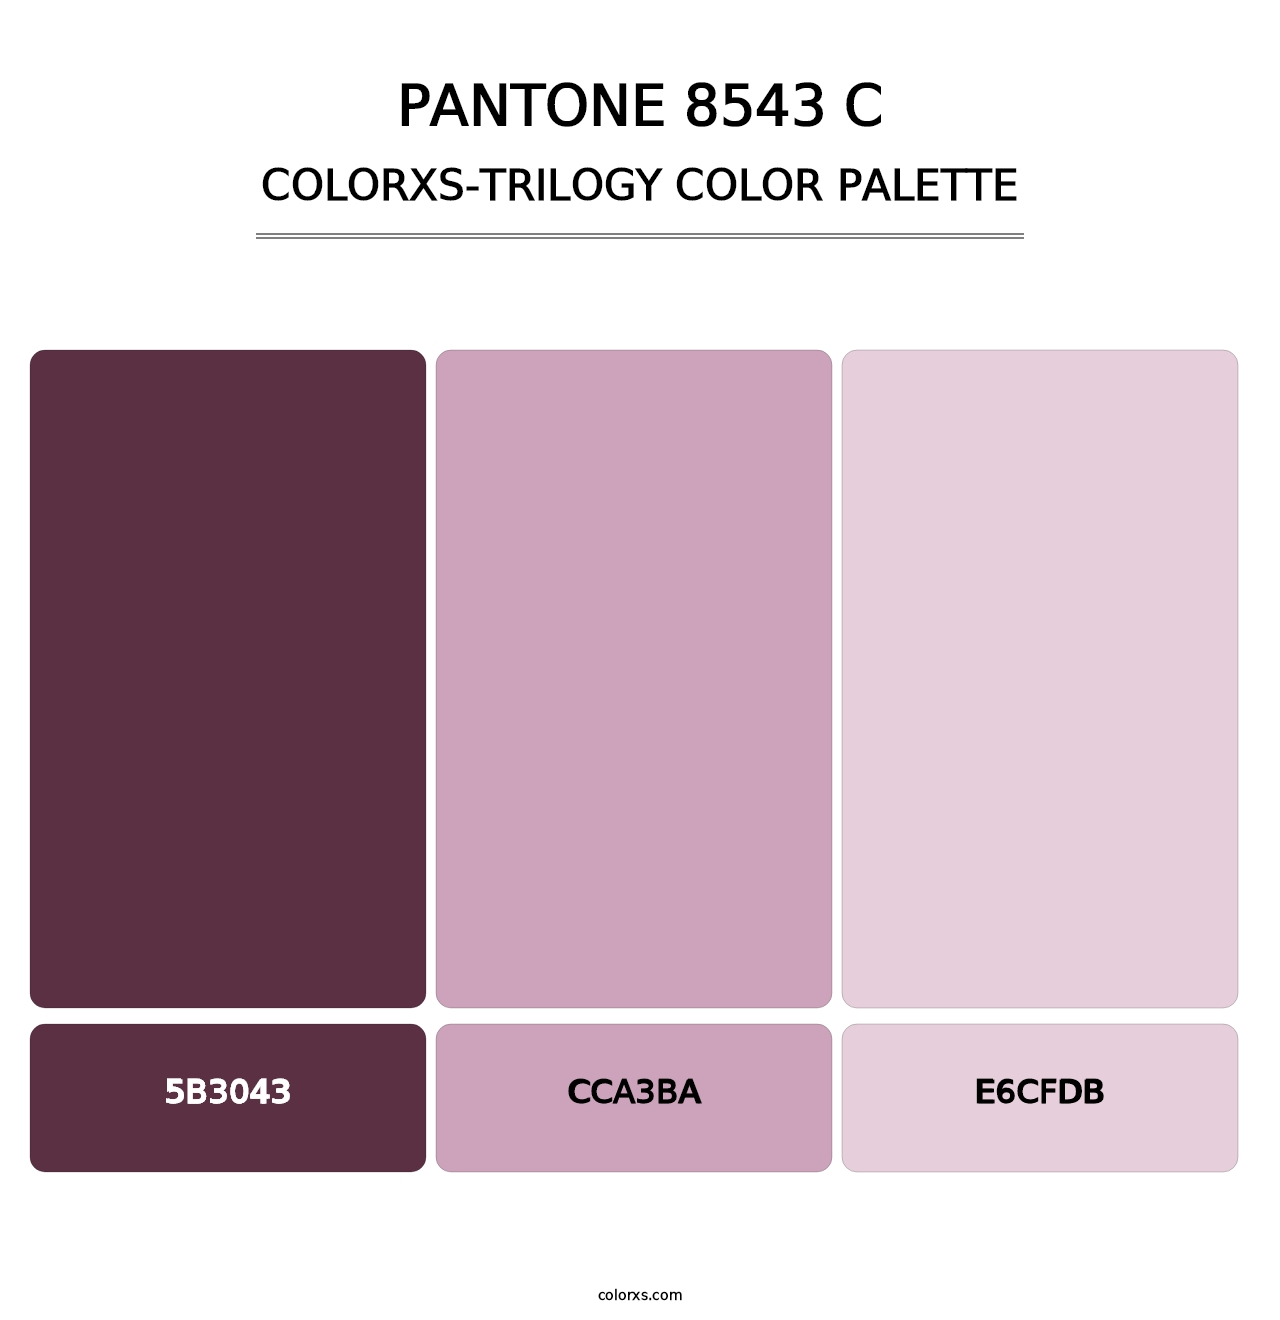 PANTONE 8543 C - Colorxs Trilogy Palette